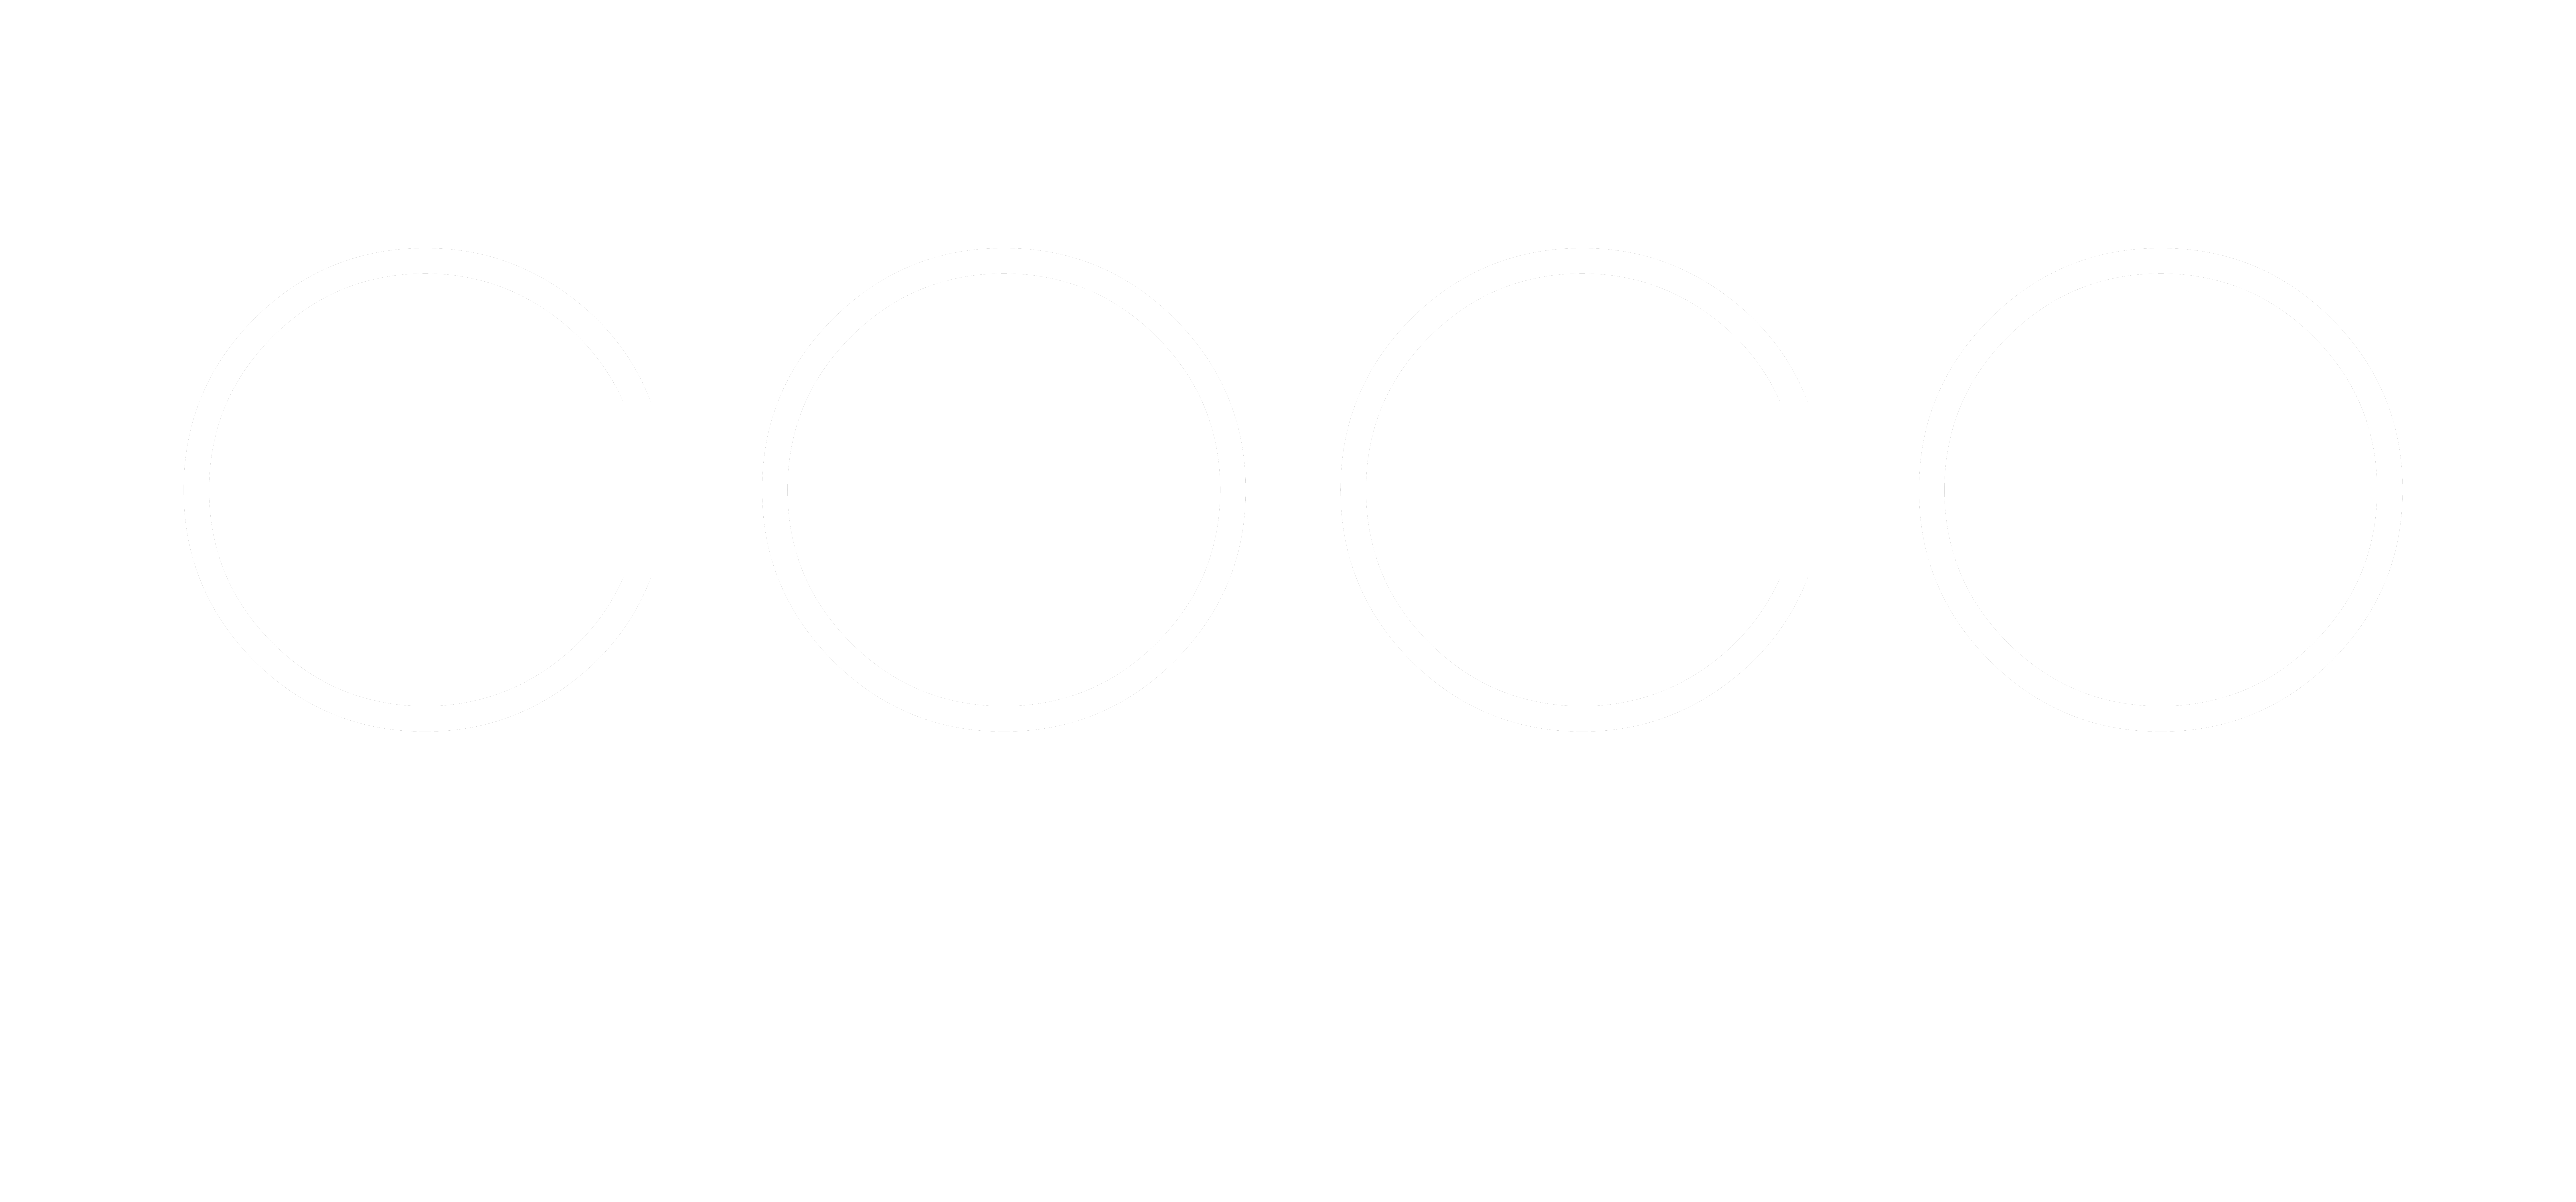 Coco Miami